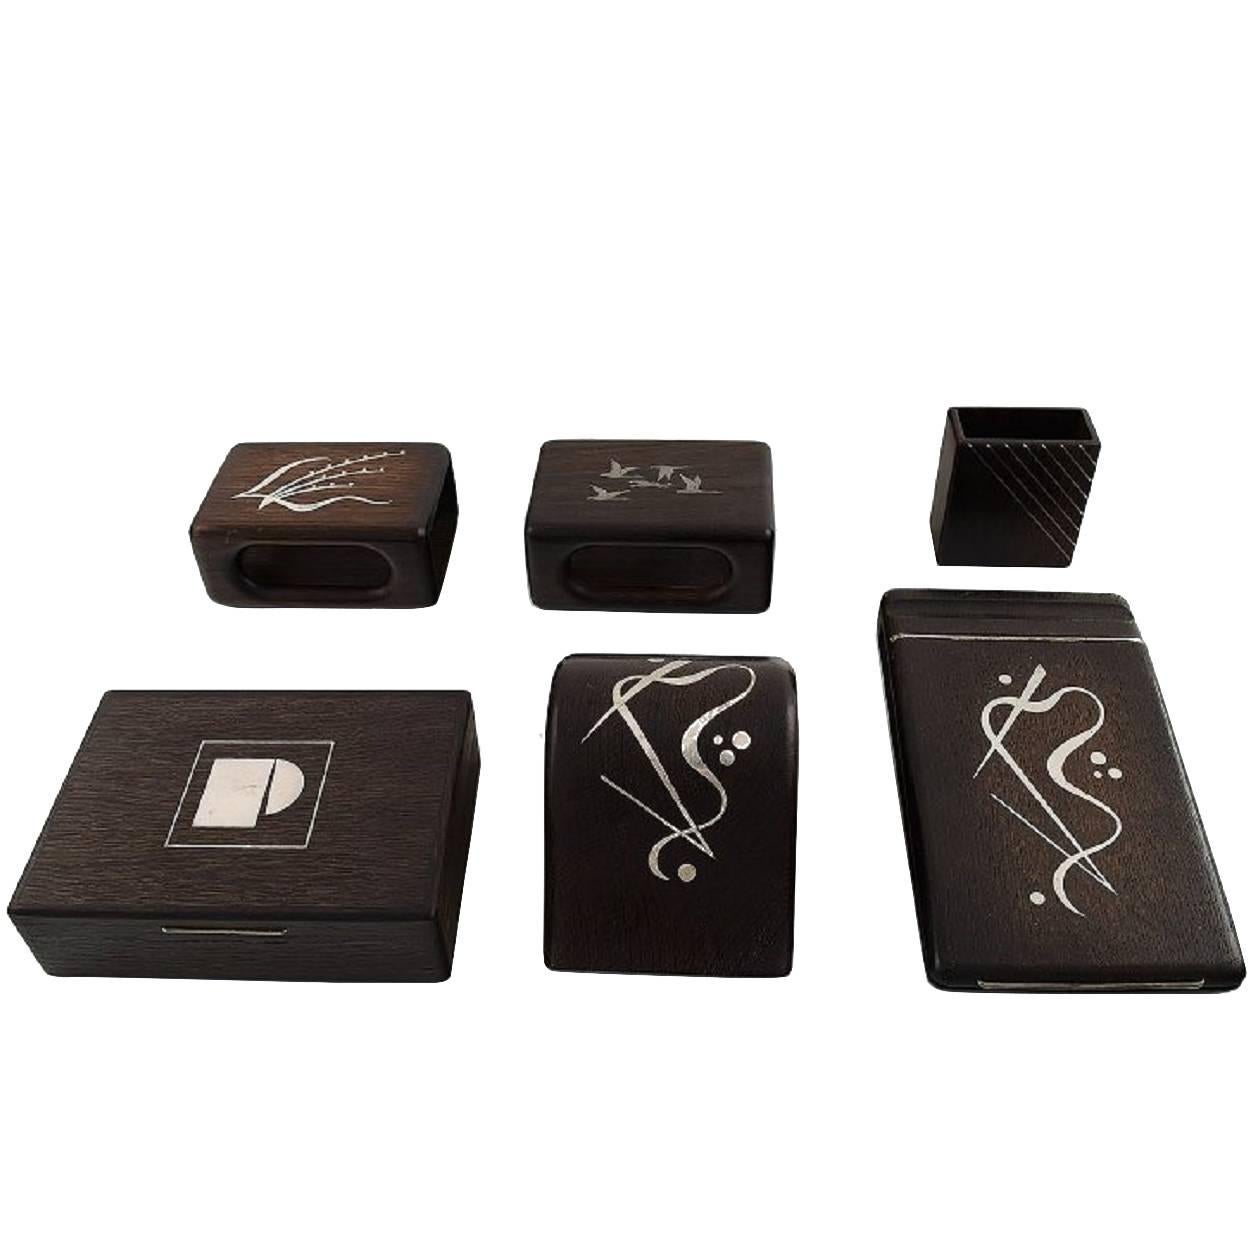 Dänisches Design-Set aus sechs Teilen aus Palisanderholz mit Silberintarsien, Schachtel, Notizbuchstabe und mehr